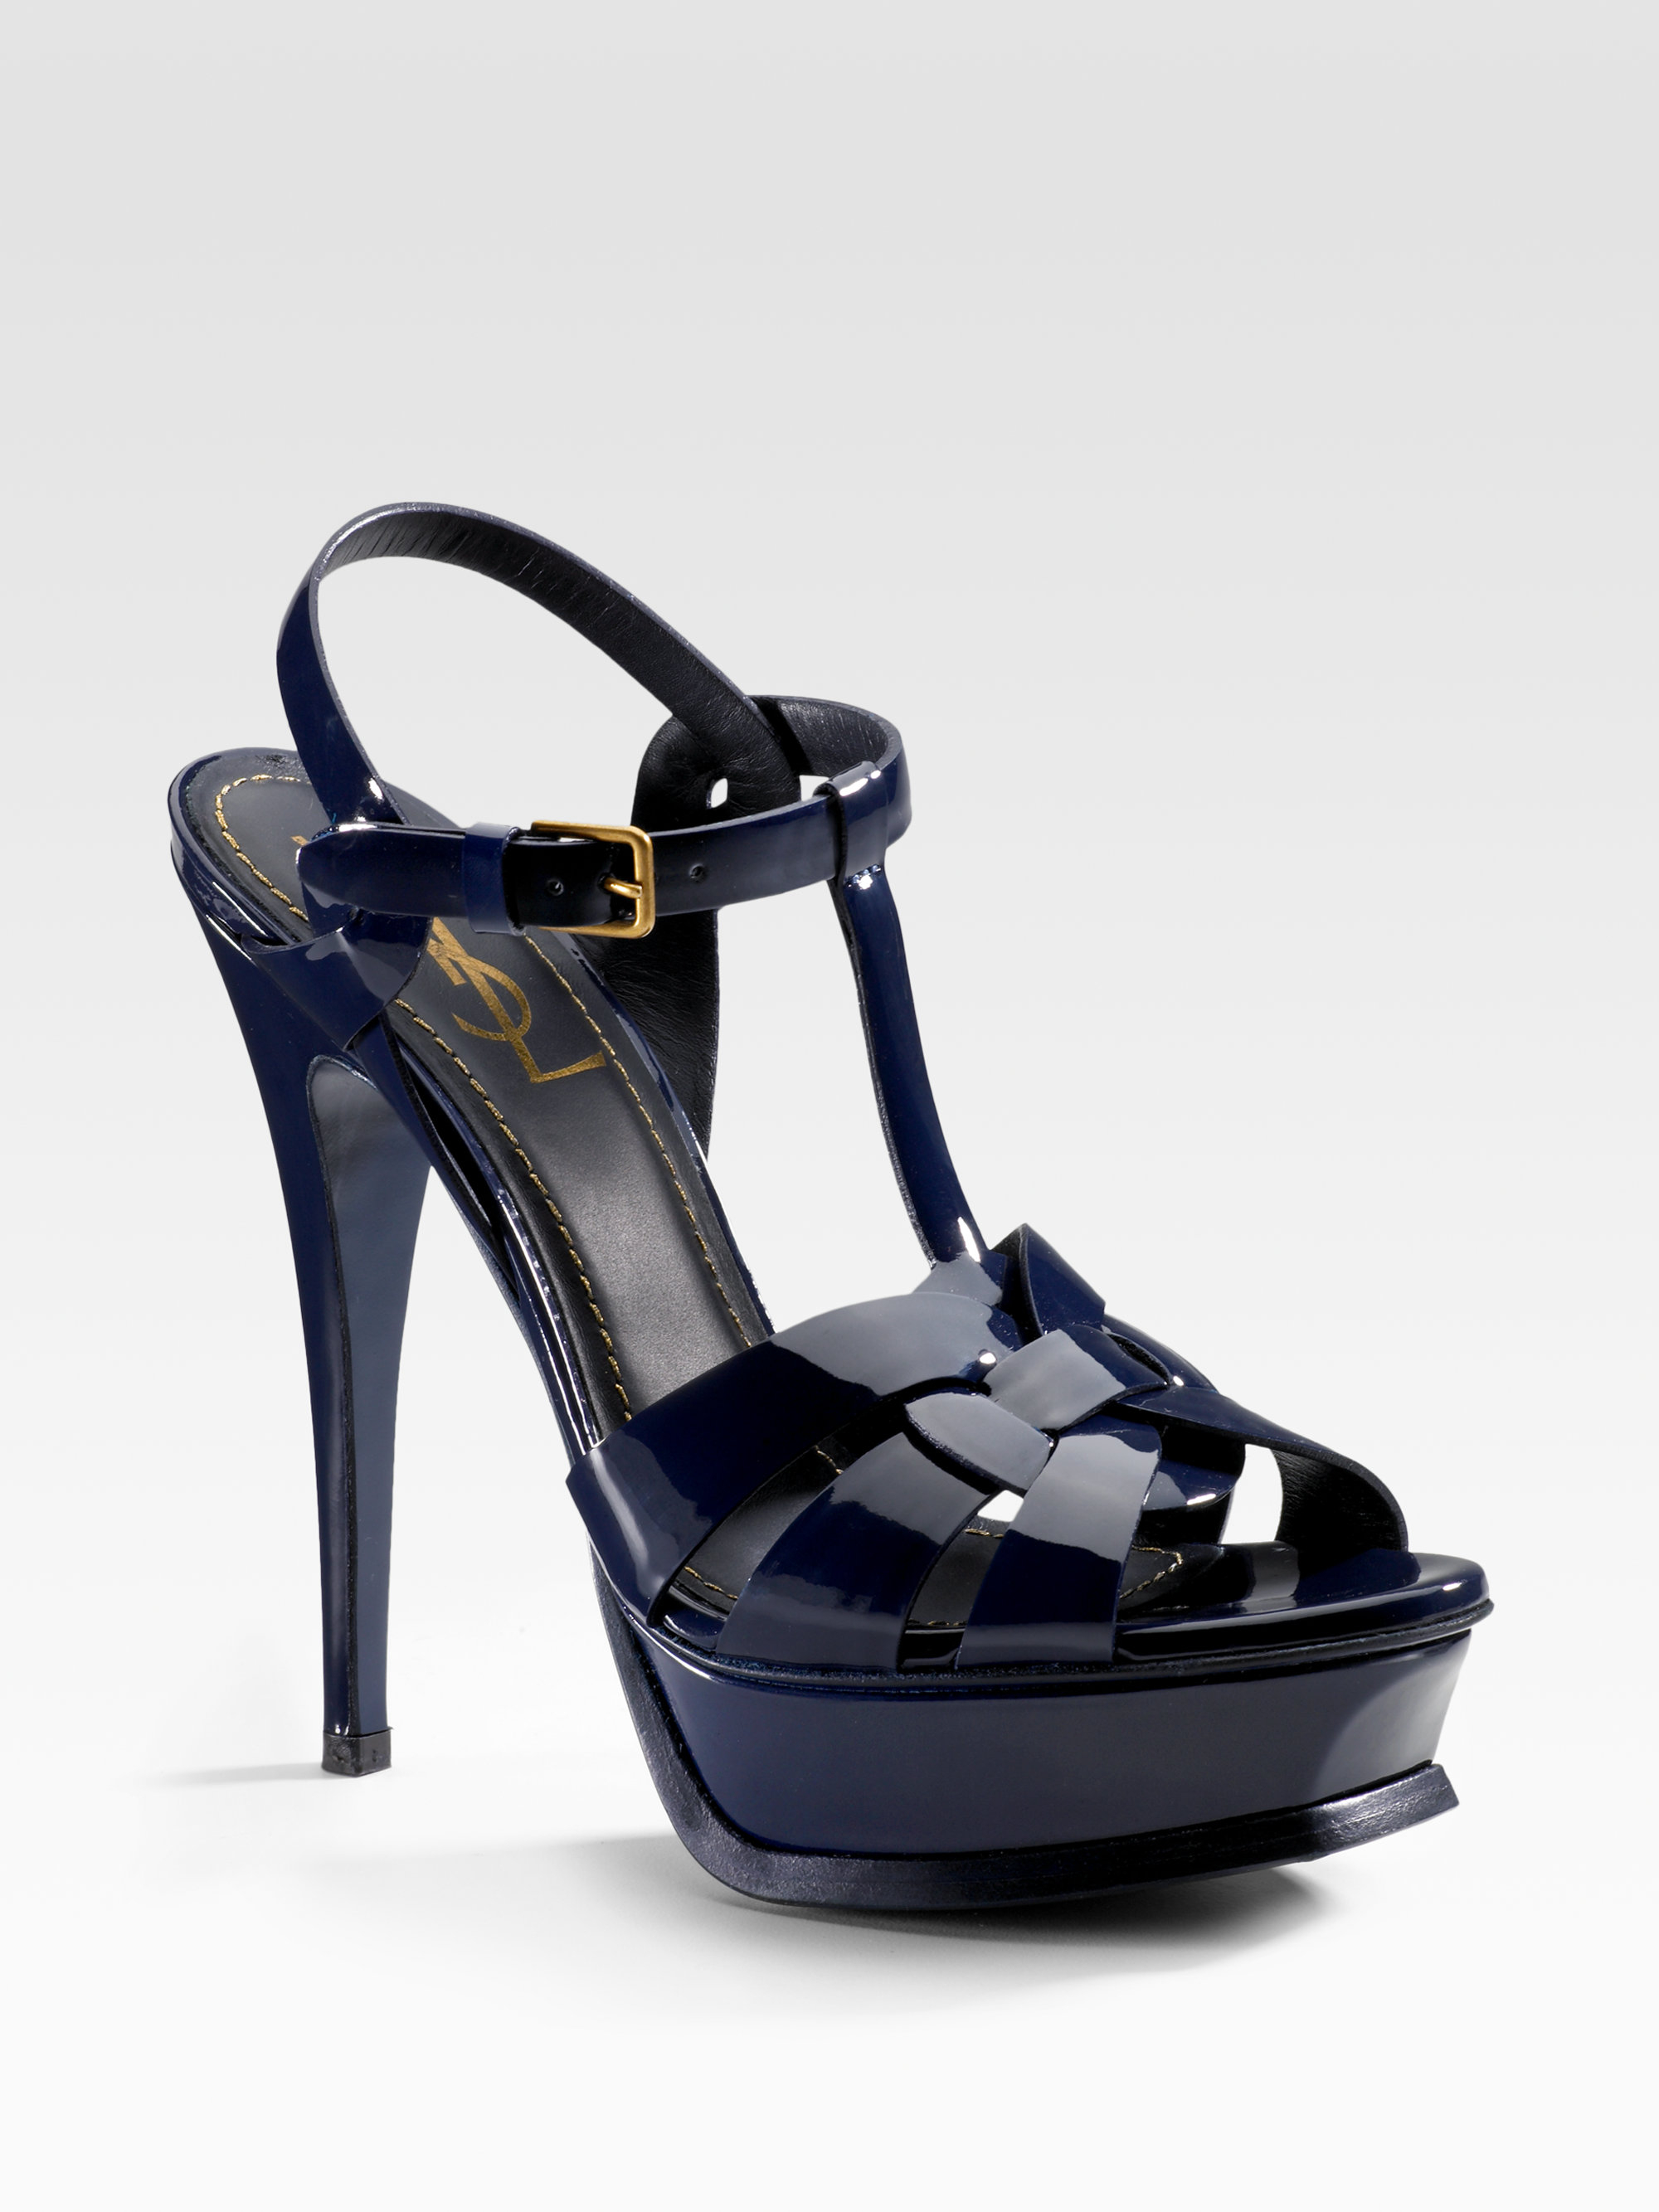 Saint Laurent Tribute Patent Leather Platform Sandals in Blue (navy) | Lyst